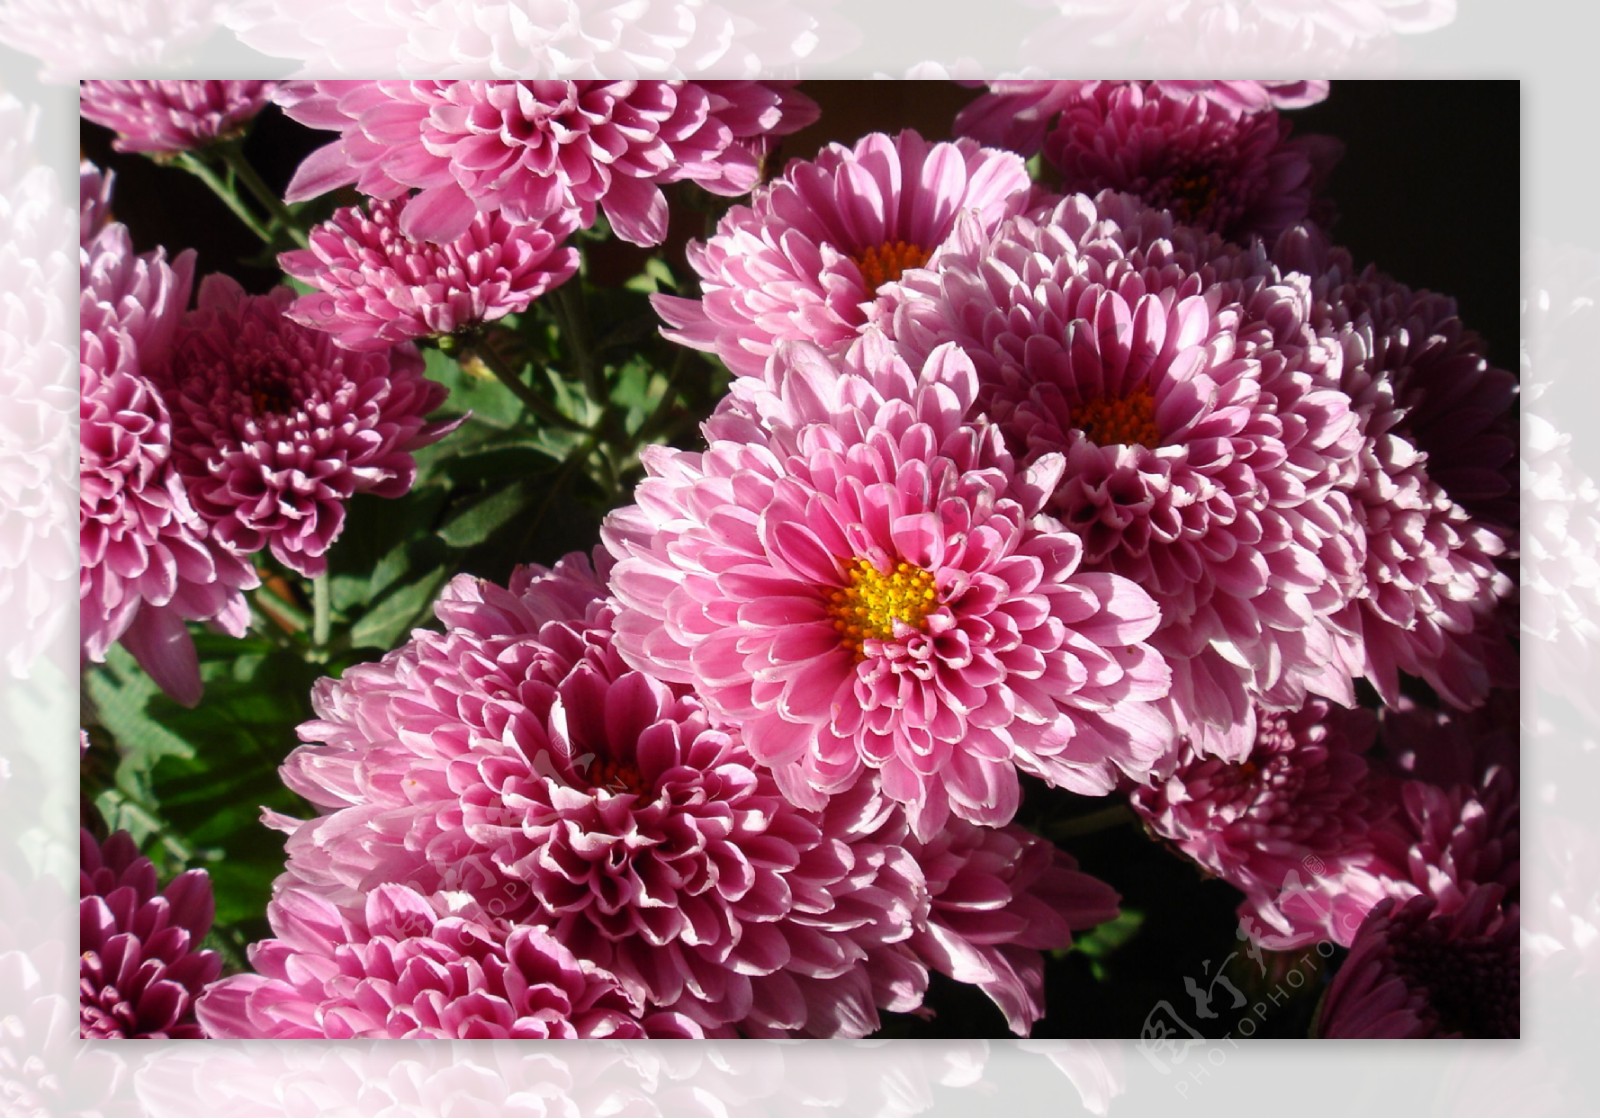 粉色小菊花近景摄影图植物自然